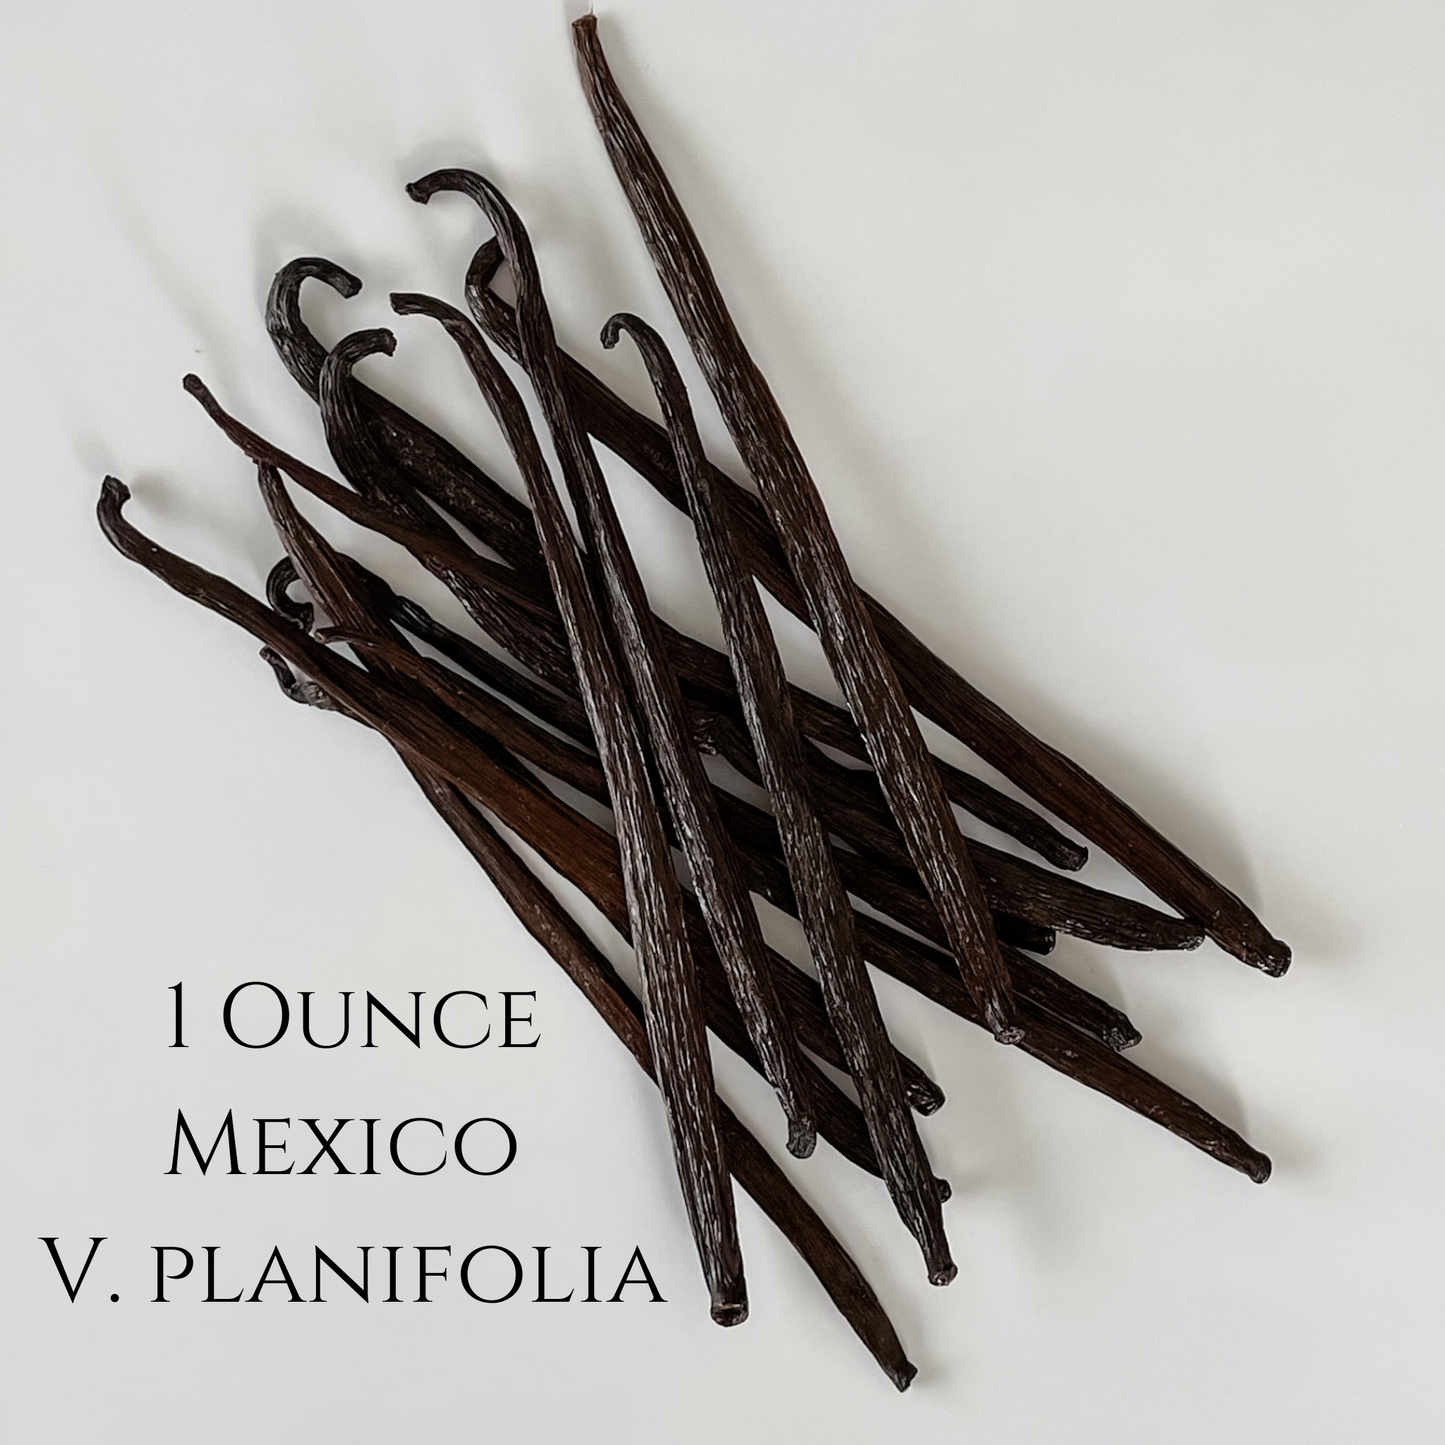 Mexico V. planifolia Vanilla Beans